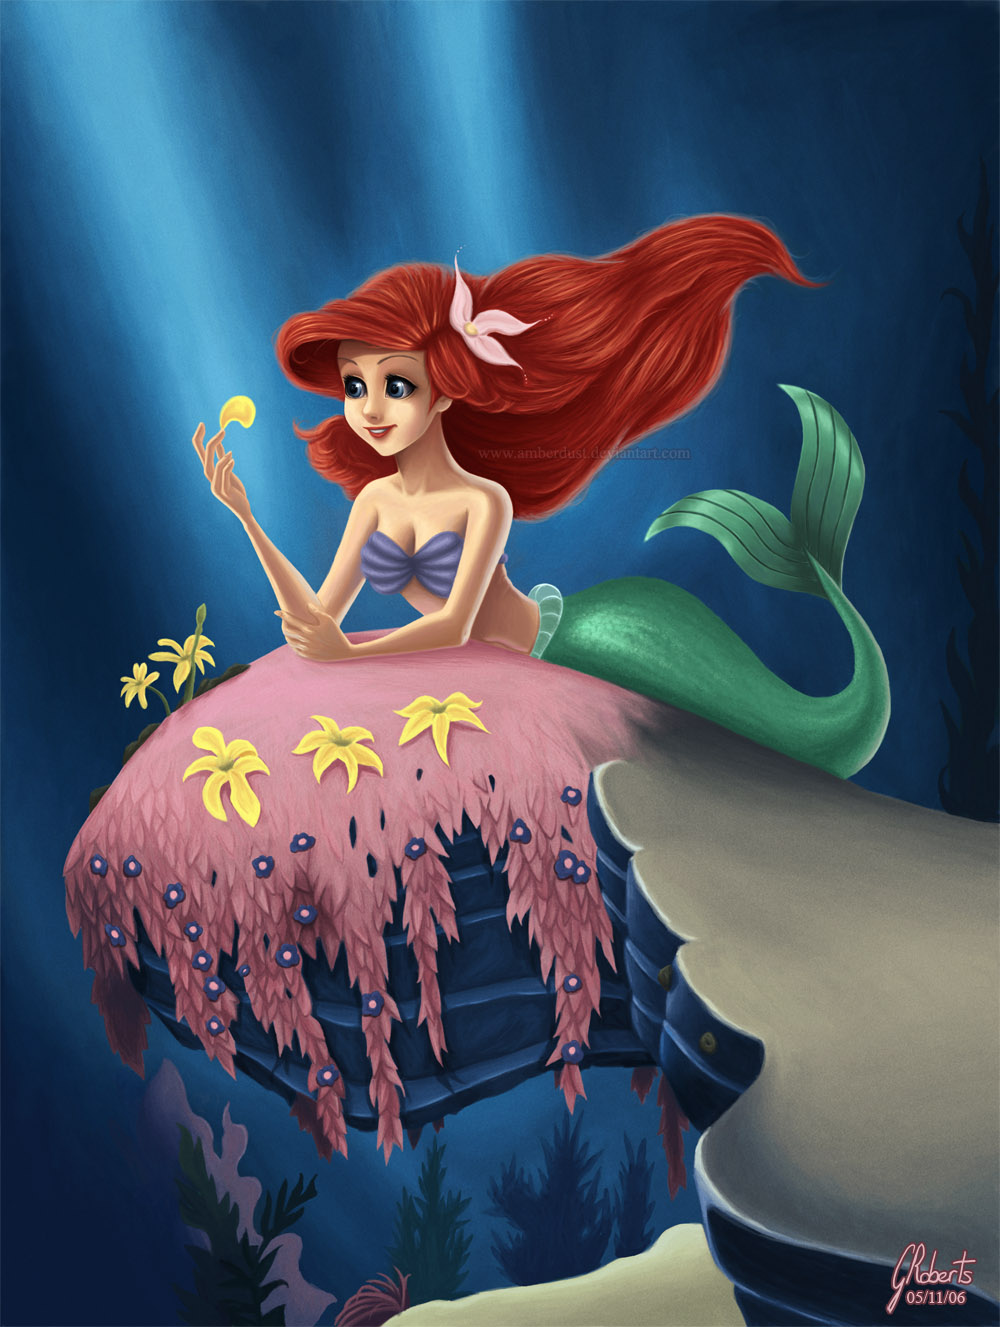 Little Mermaid loves